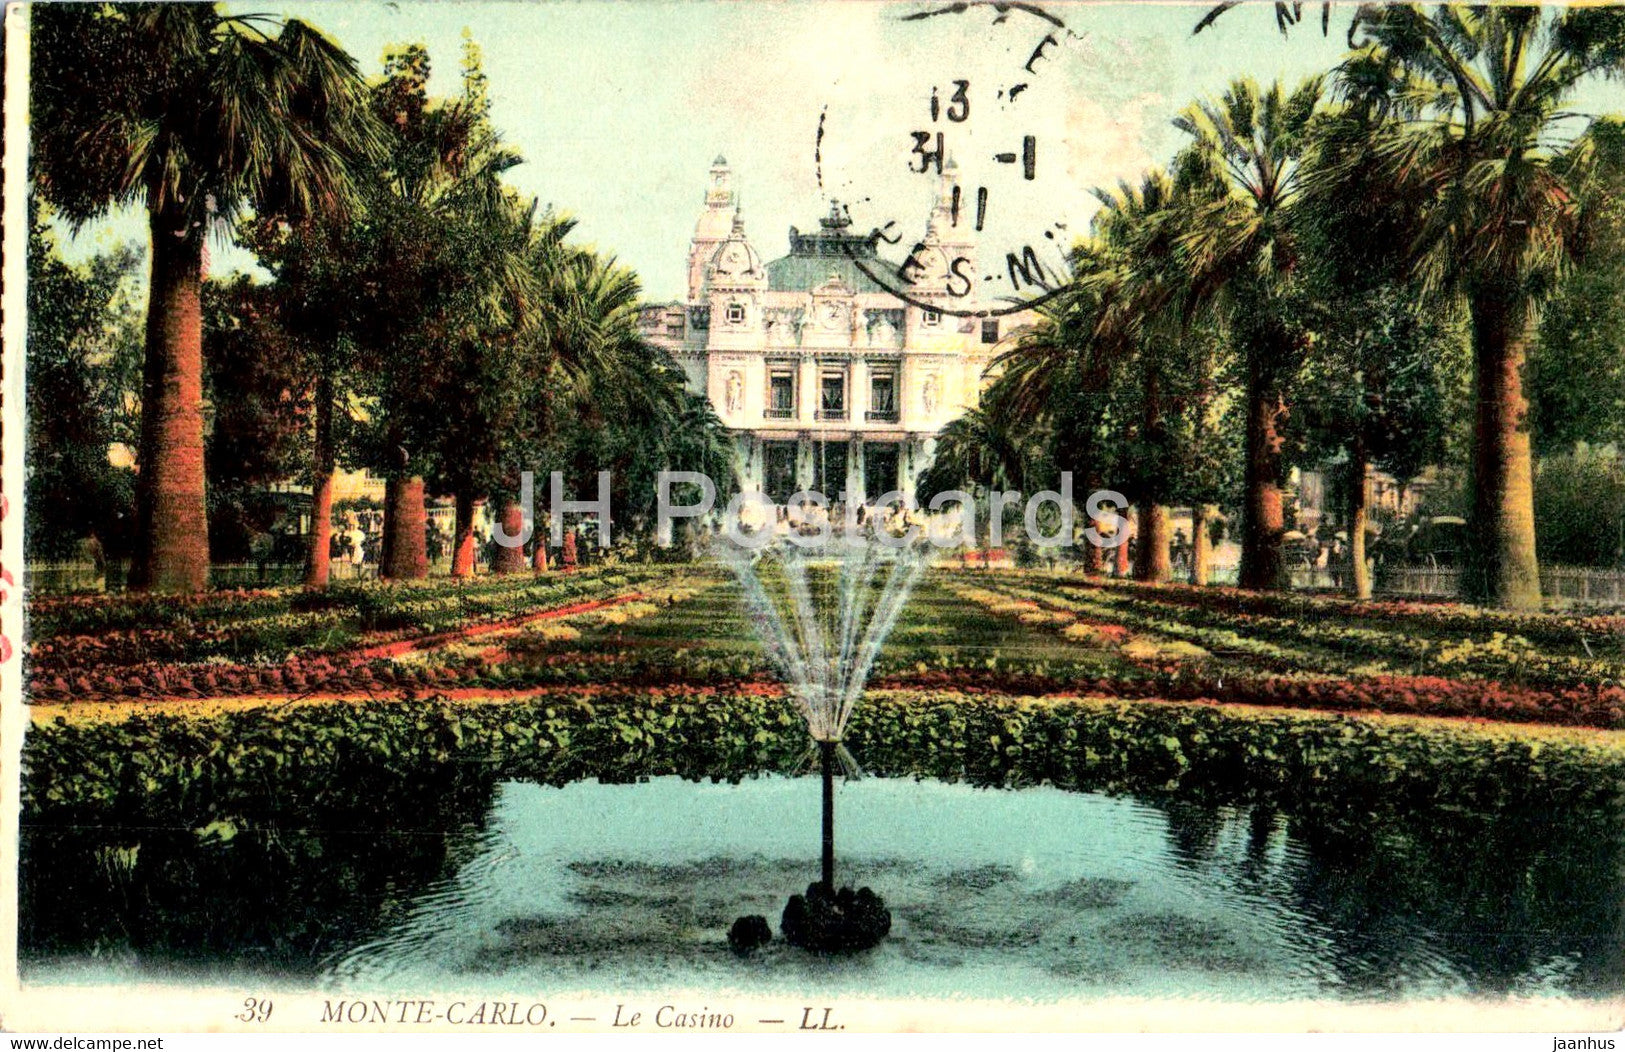 Monte Carlo - Le Casino - 39 - old postcard - 1911 - Monaco - used - JH Postcards